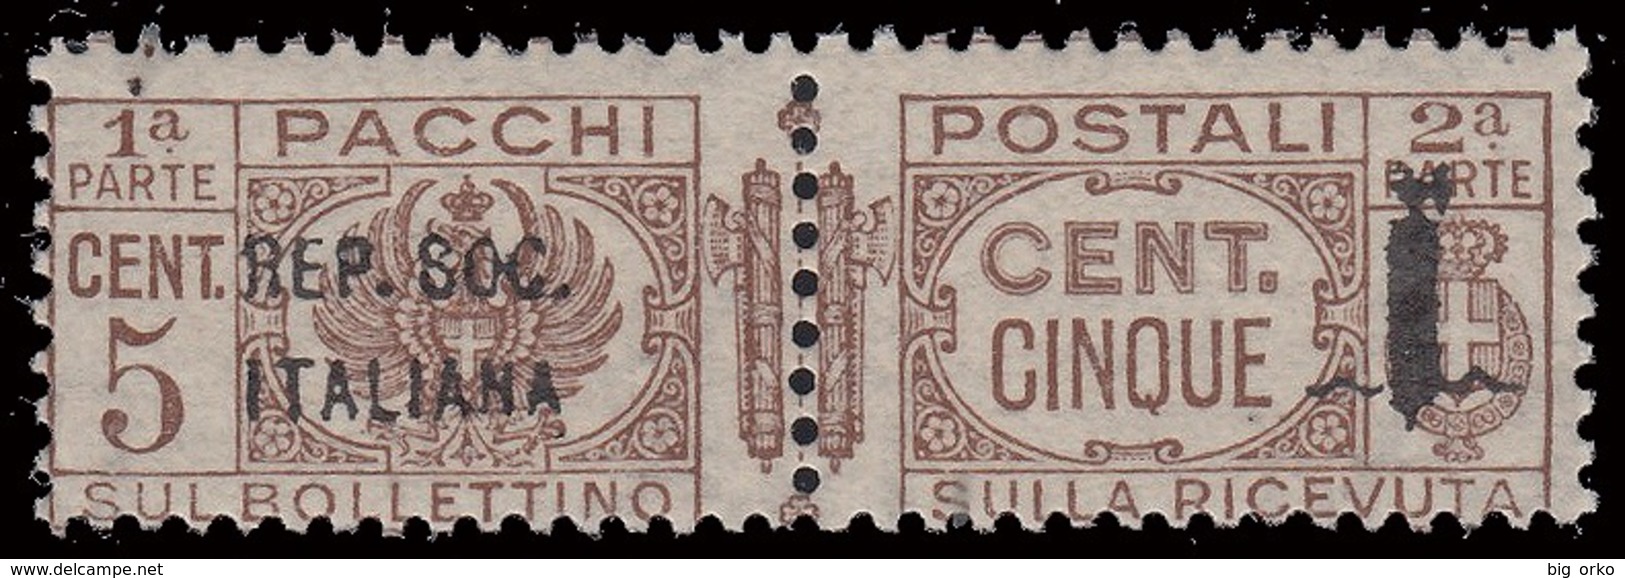 Italia: R.S.I. - Pacchi Postali: 5 C. Bruno - 1944 - Paketmarken